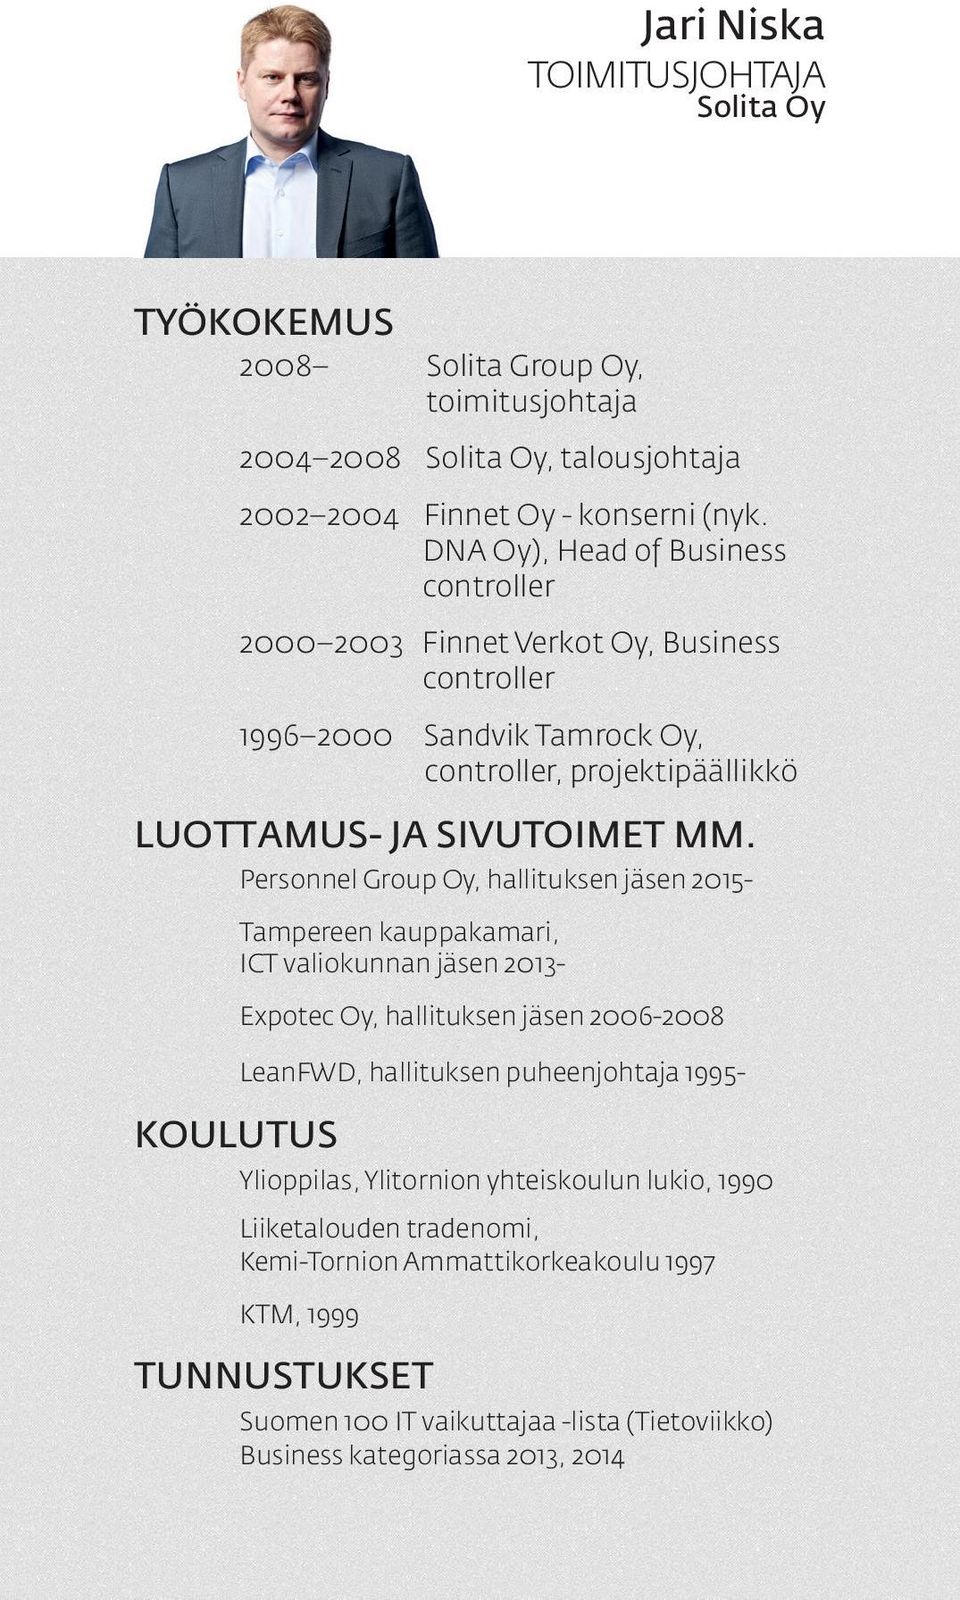 Personnel Group Oy, hallituksen jäsen 2015- Tampereen kauppakamari, ICT valiokunnan jäsen 2013- Expotec Oy, hallituksen jäsen 2006-2008 KOULUTUS LeanFWD, hallituksen puheenjohtaja